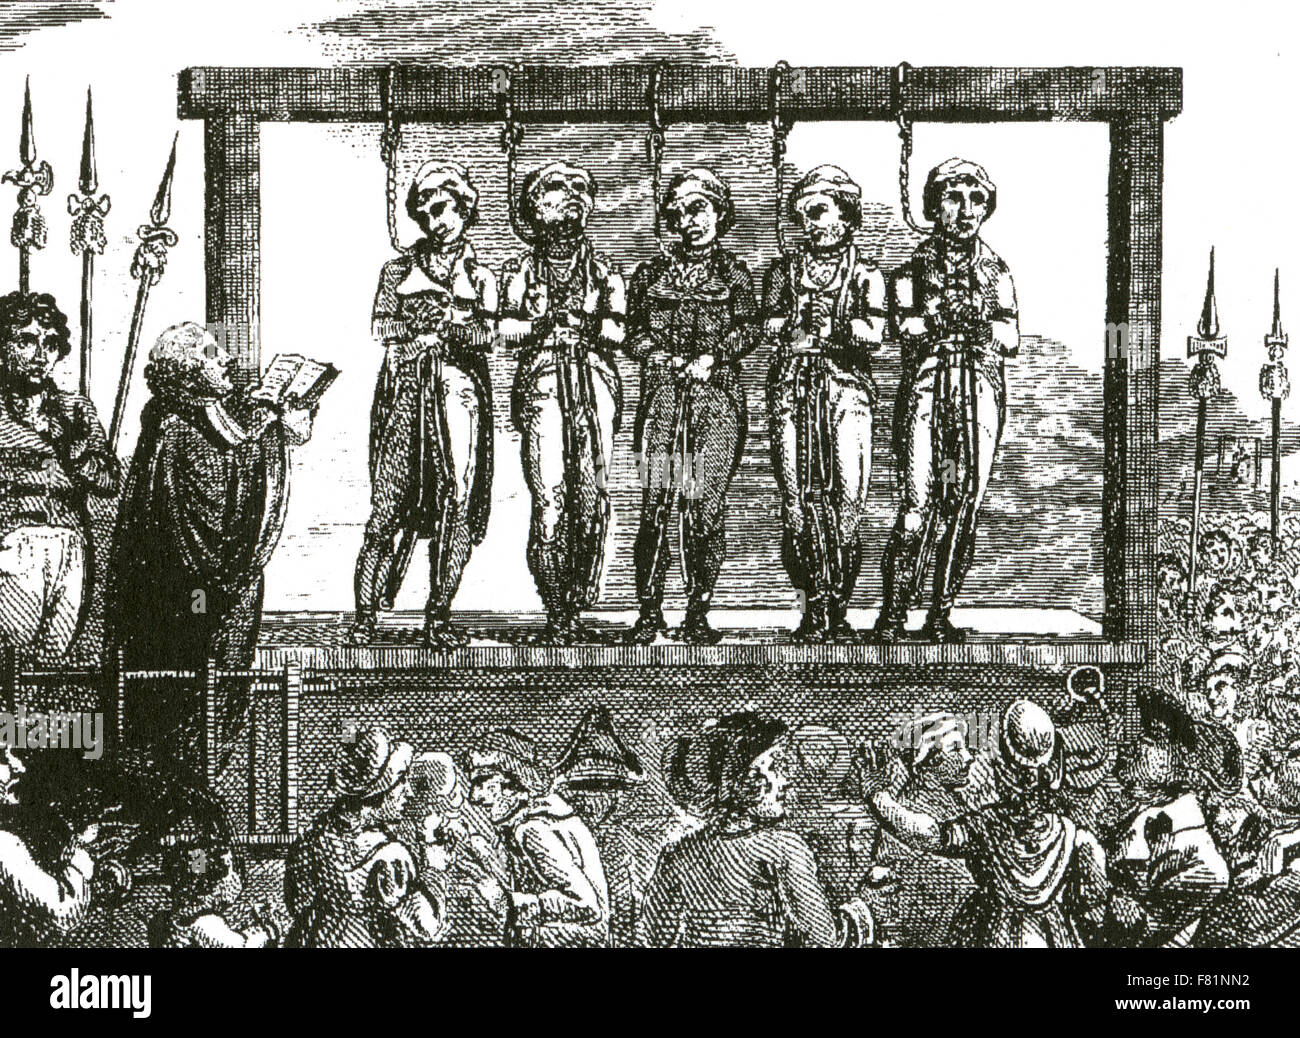 Pubblico appeso nel XVIII secolo Londra. A sinistra un sacerdote rossi gli ultimi riti Foto Stock